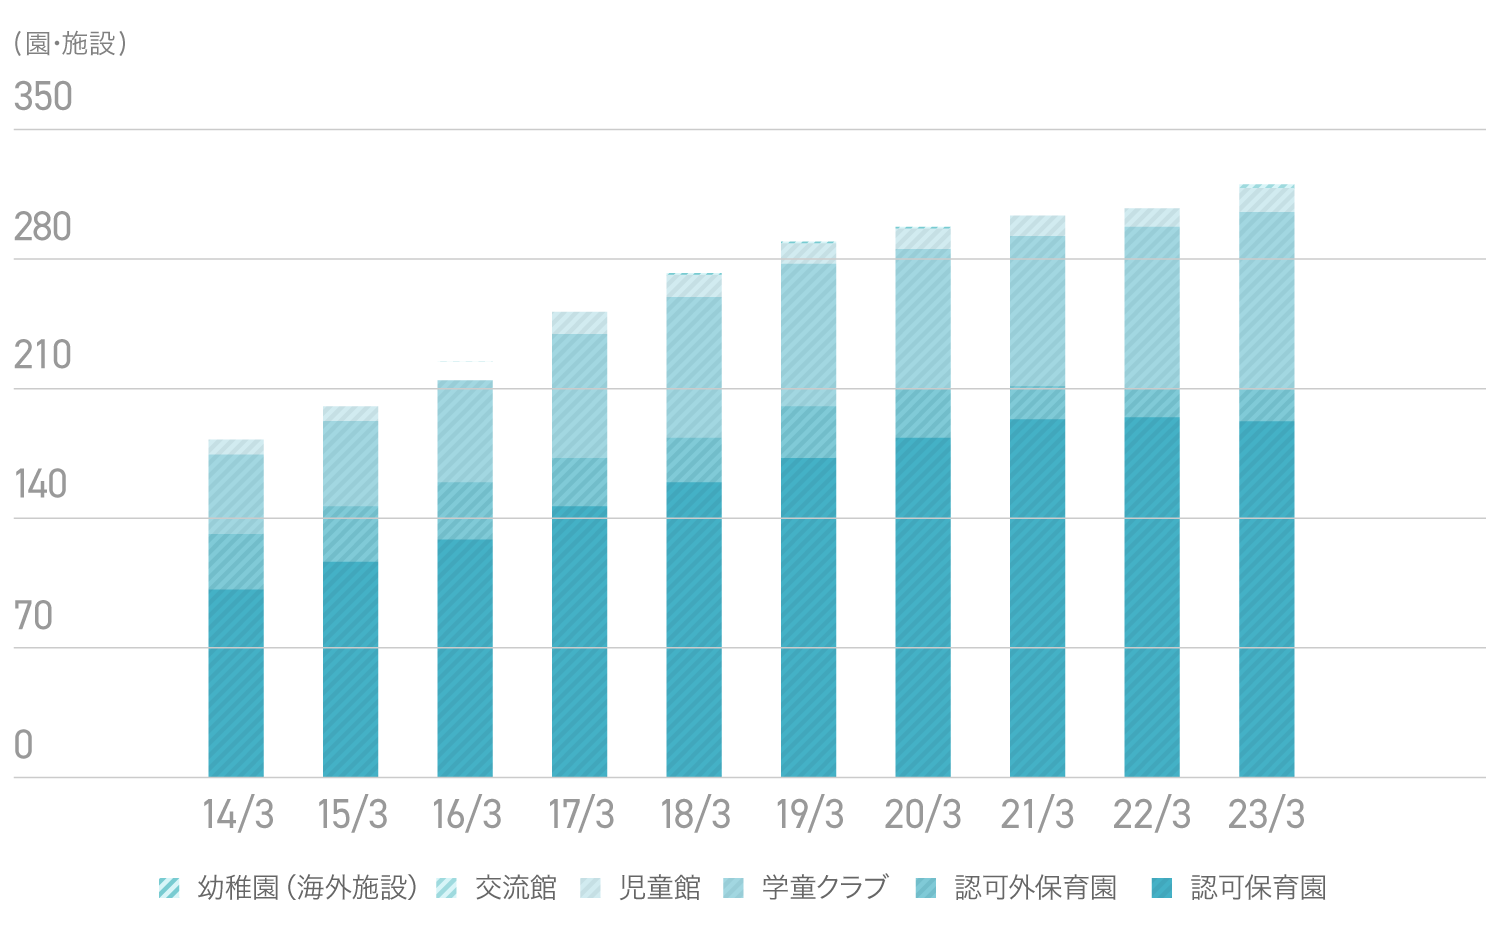 2010年から2022年まで継続して施設数が増加しています。